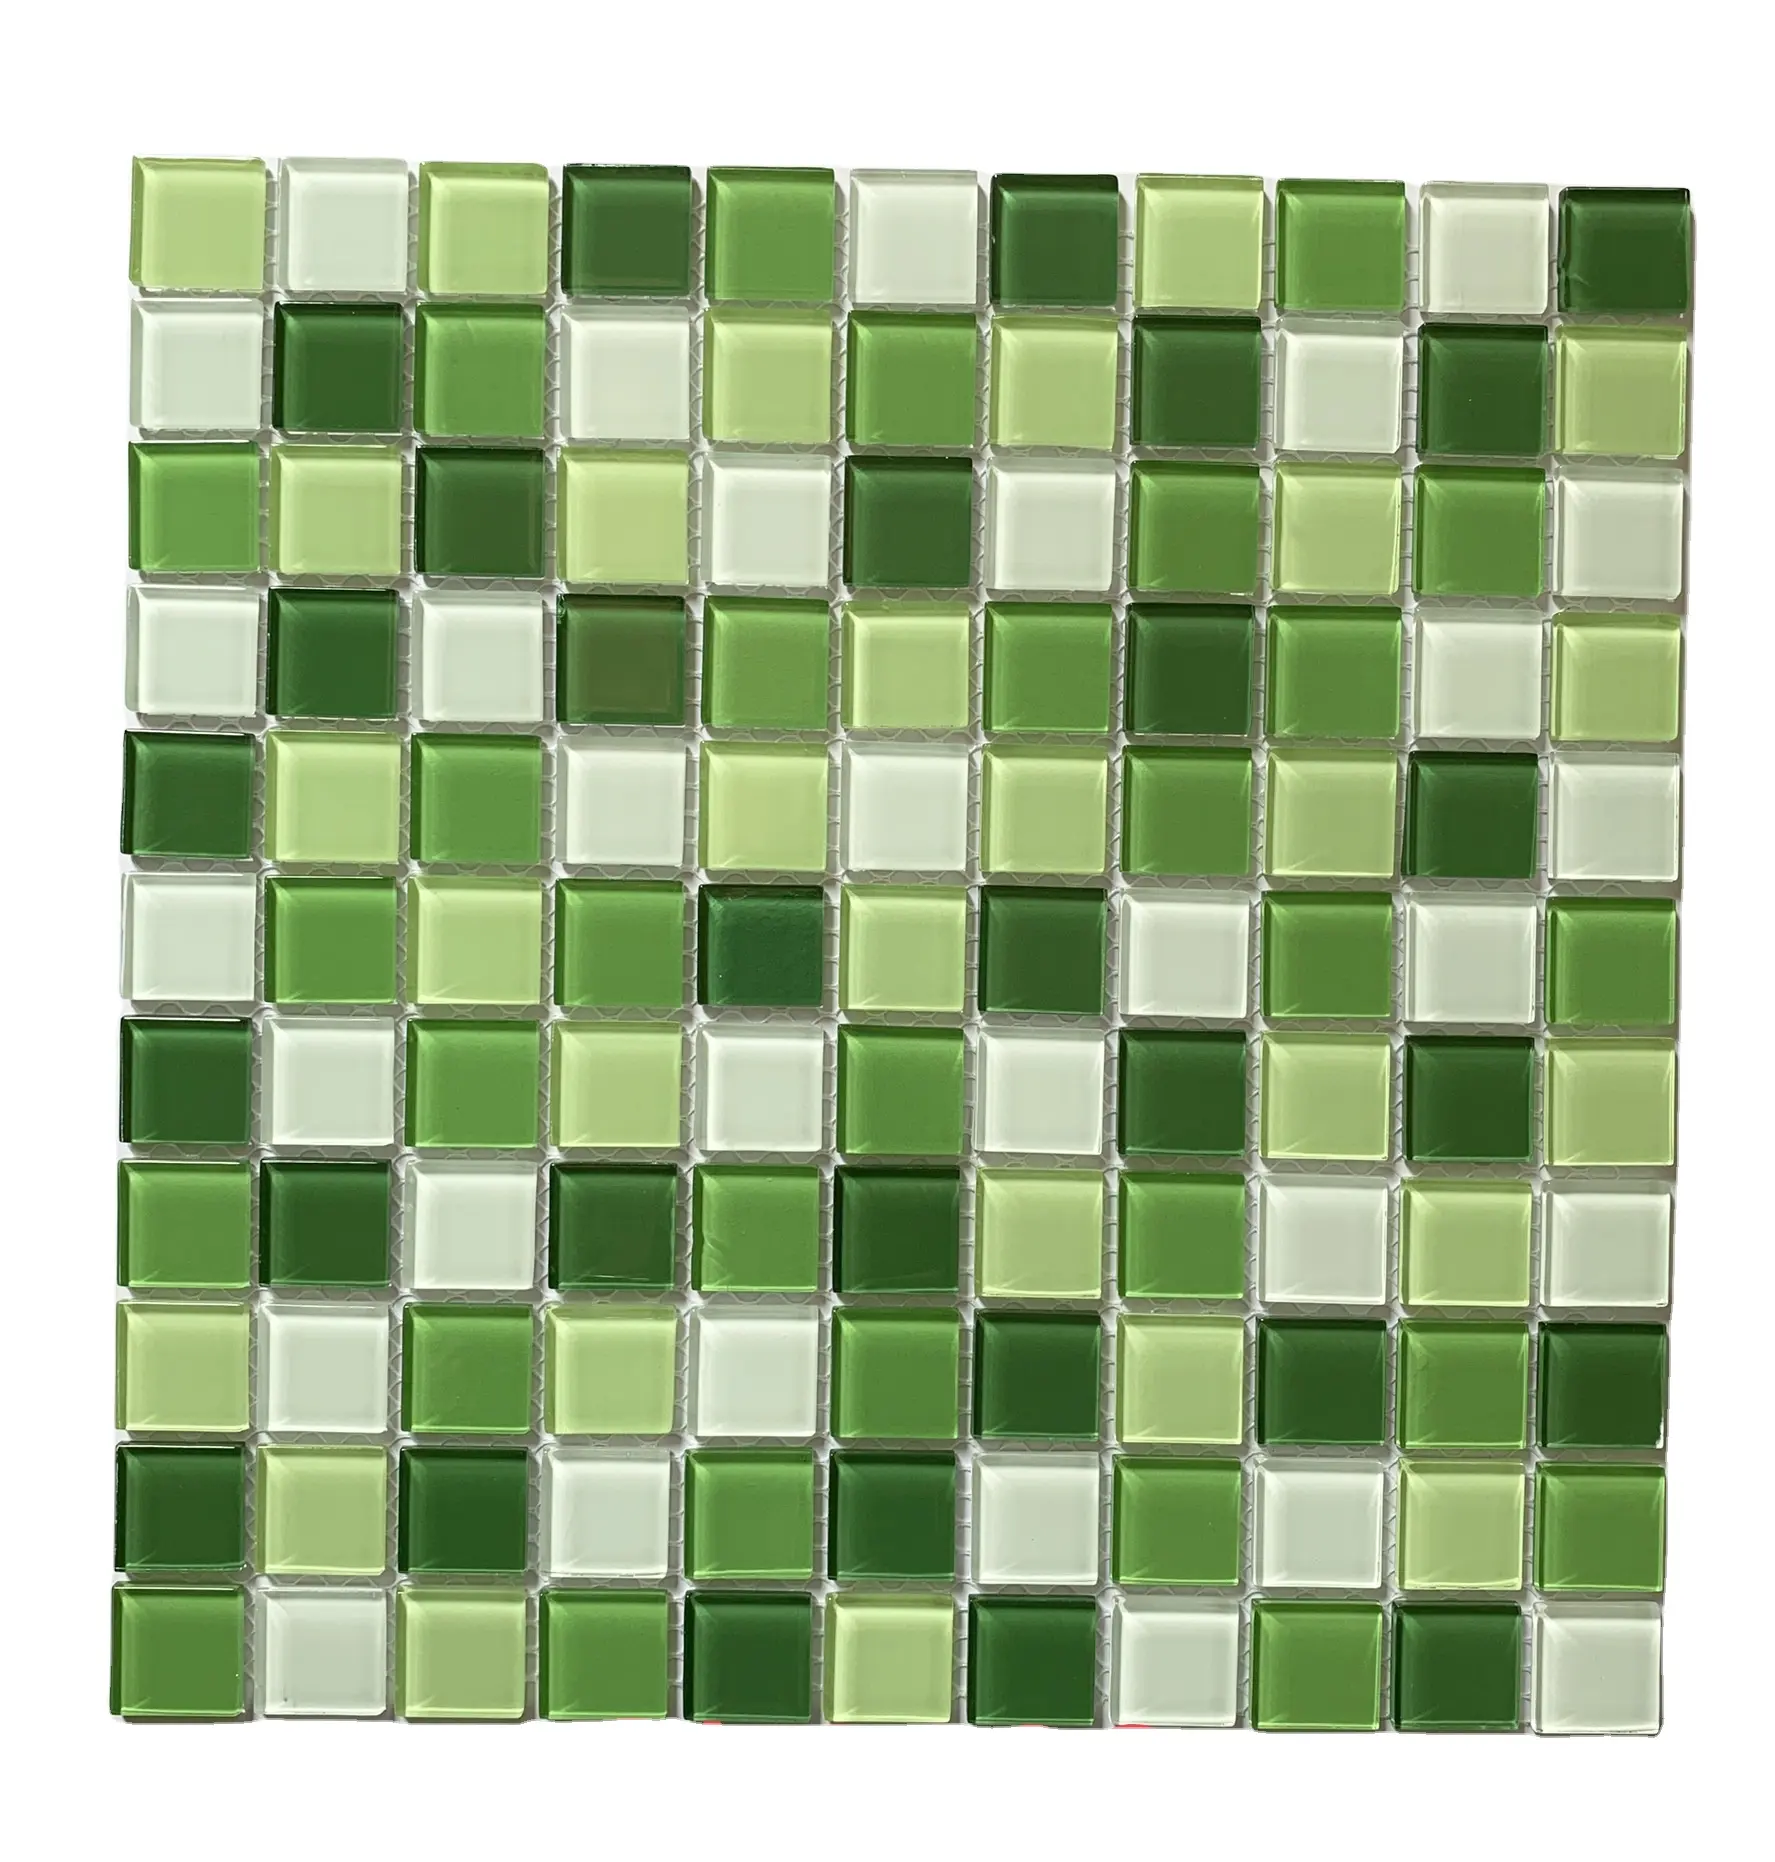 Kasaro giá rẻ màu xanh lá cây Thủy Tinh khảm cho hồ bơi Gạch Mosaic gạch chất lượng cao hỗn hợp màu sắc tường gạch chất liệu